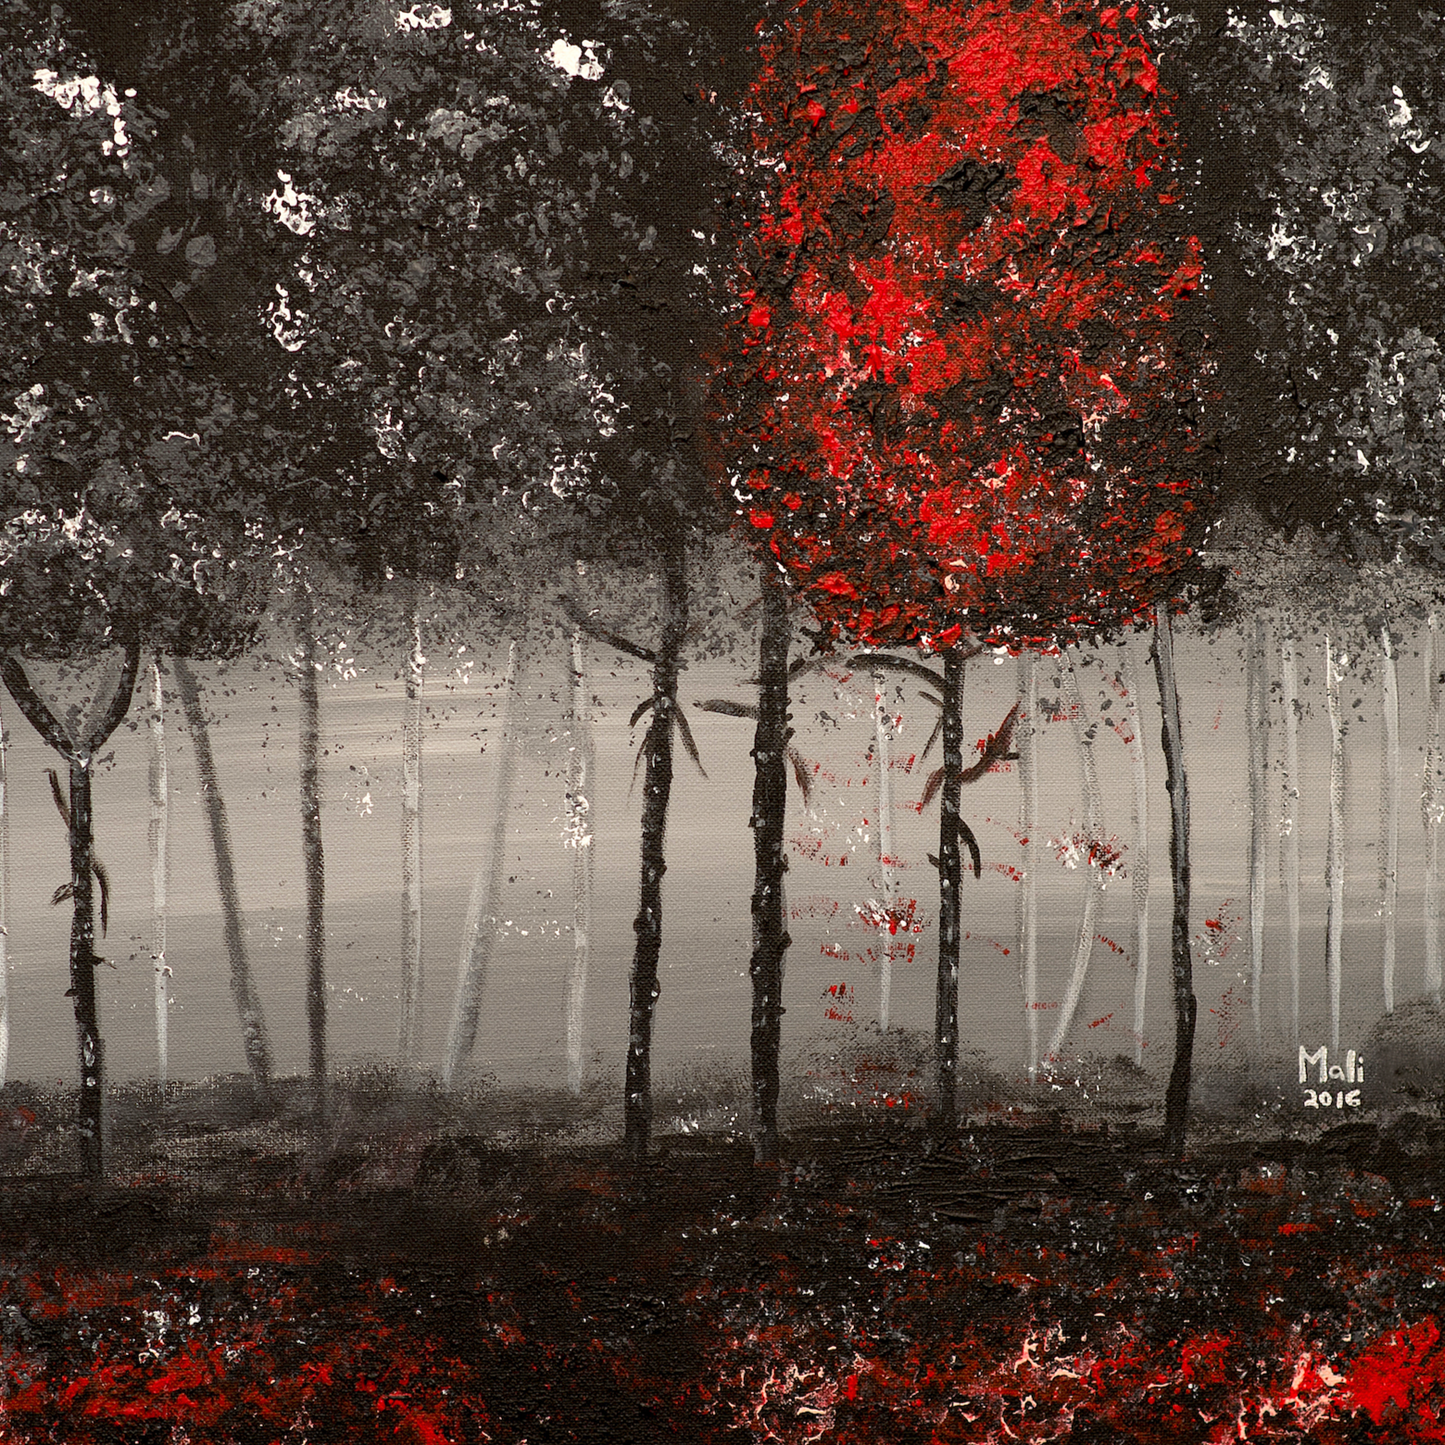 "Dark Forest" by Mali Armand